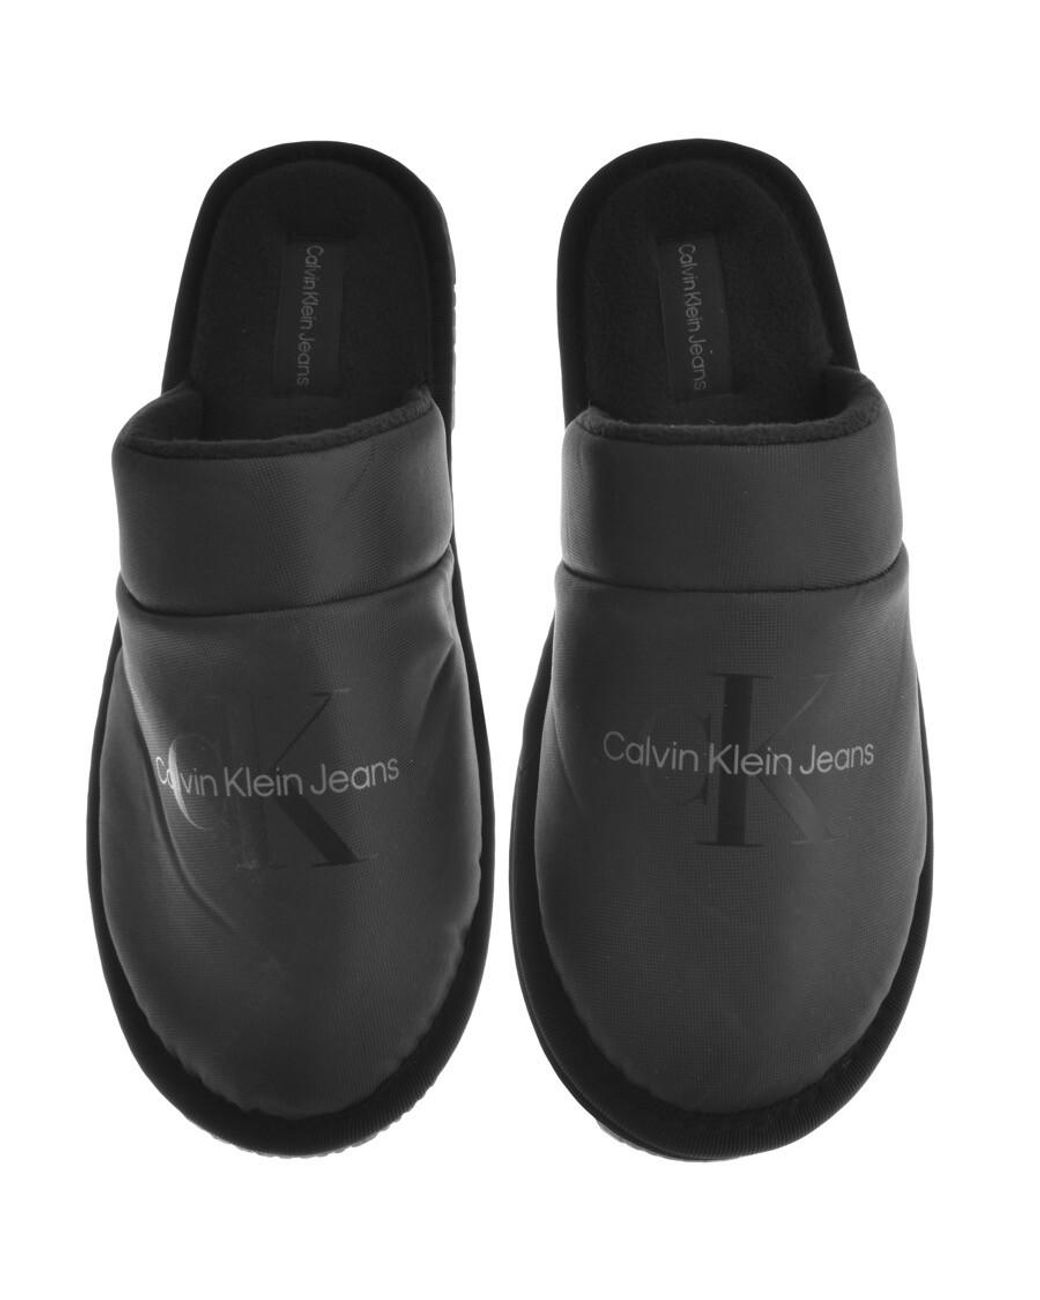 Calvin Klein Slippers Flip flops, Size UK 10 / EU 44M | eBay